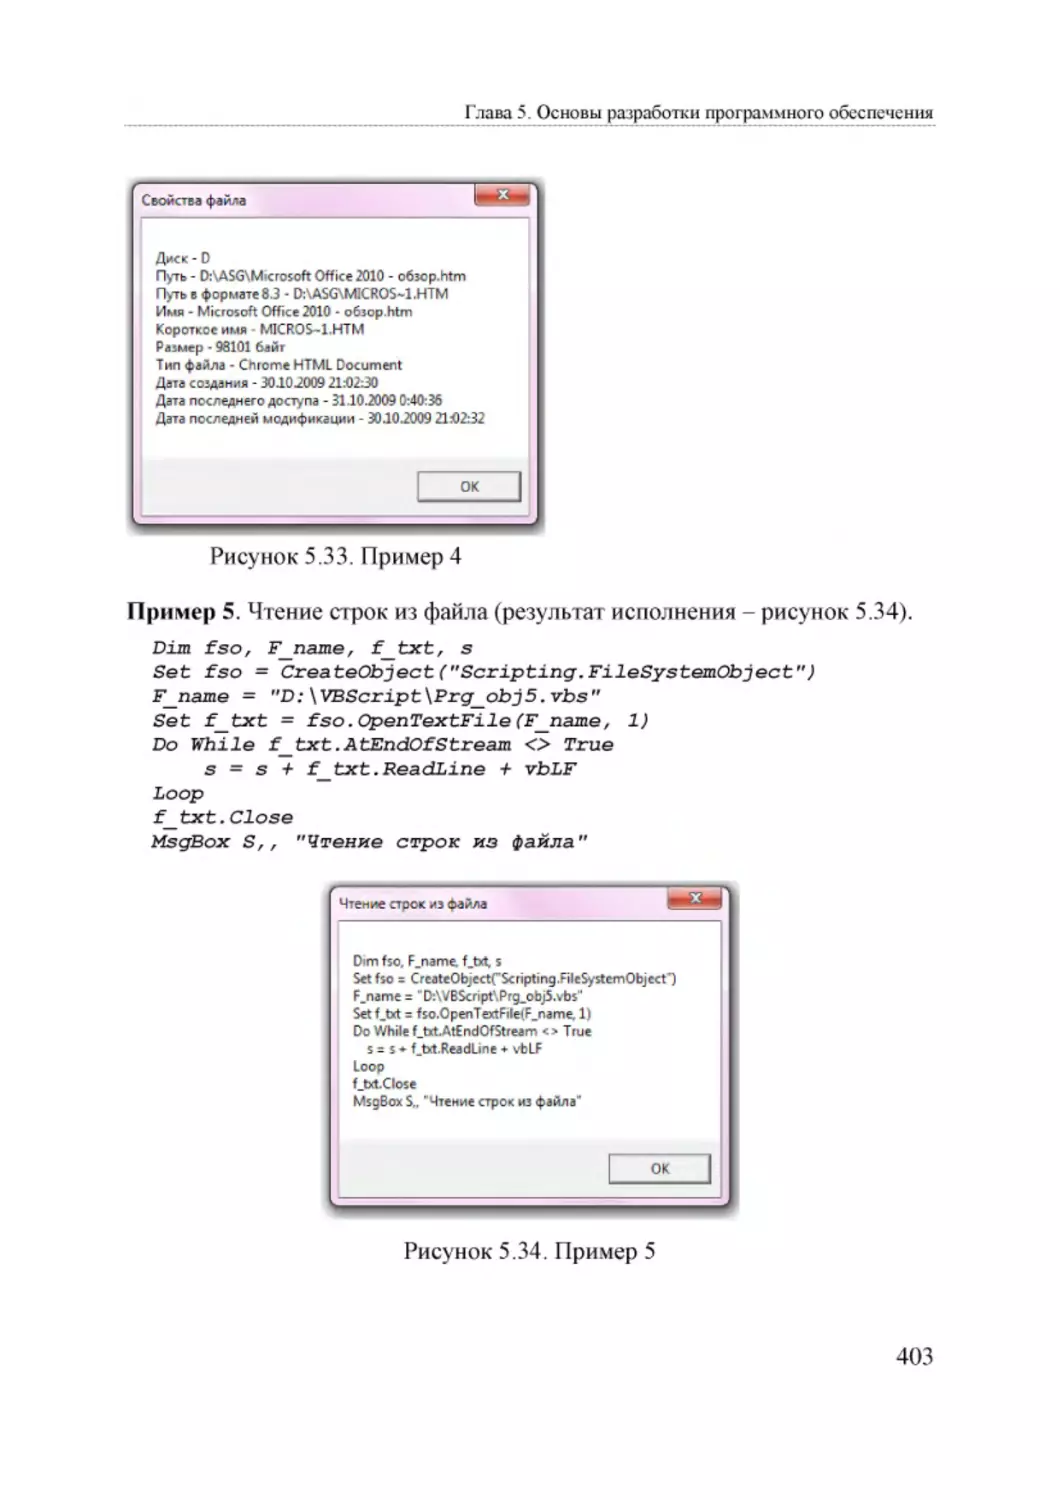 Informatika_Uchebnik_dlya_vuzov_2010 403